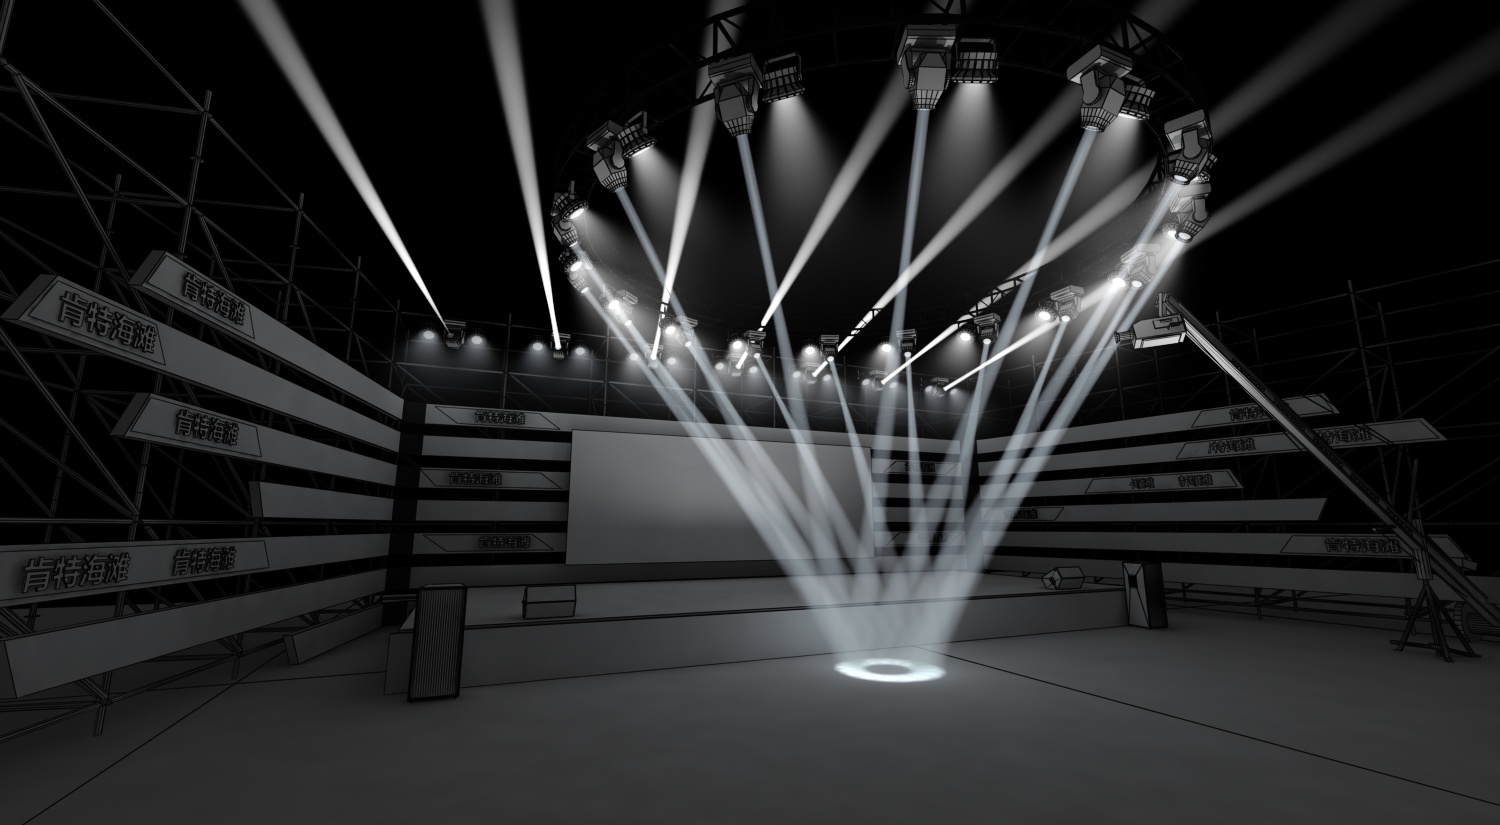 舞台灯光设计的基本原则|舞台灯光设计|舞台灯光效果|灯光设计师|舞台灯光|首选声际电声